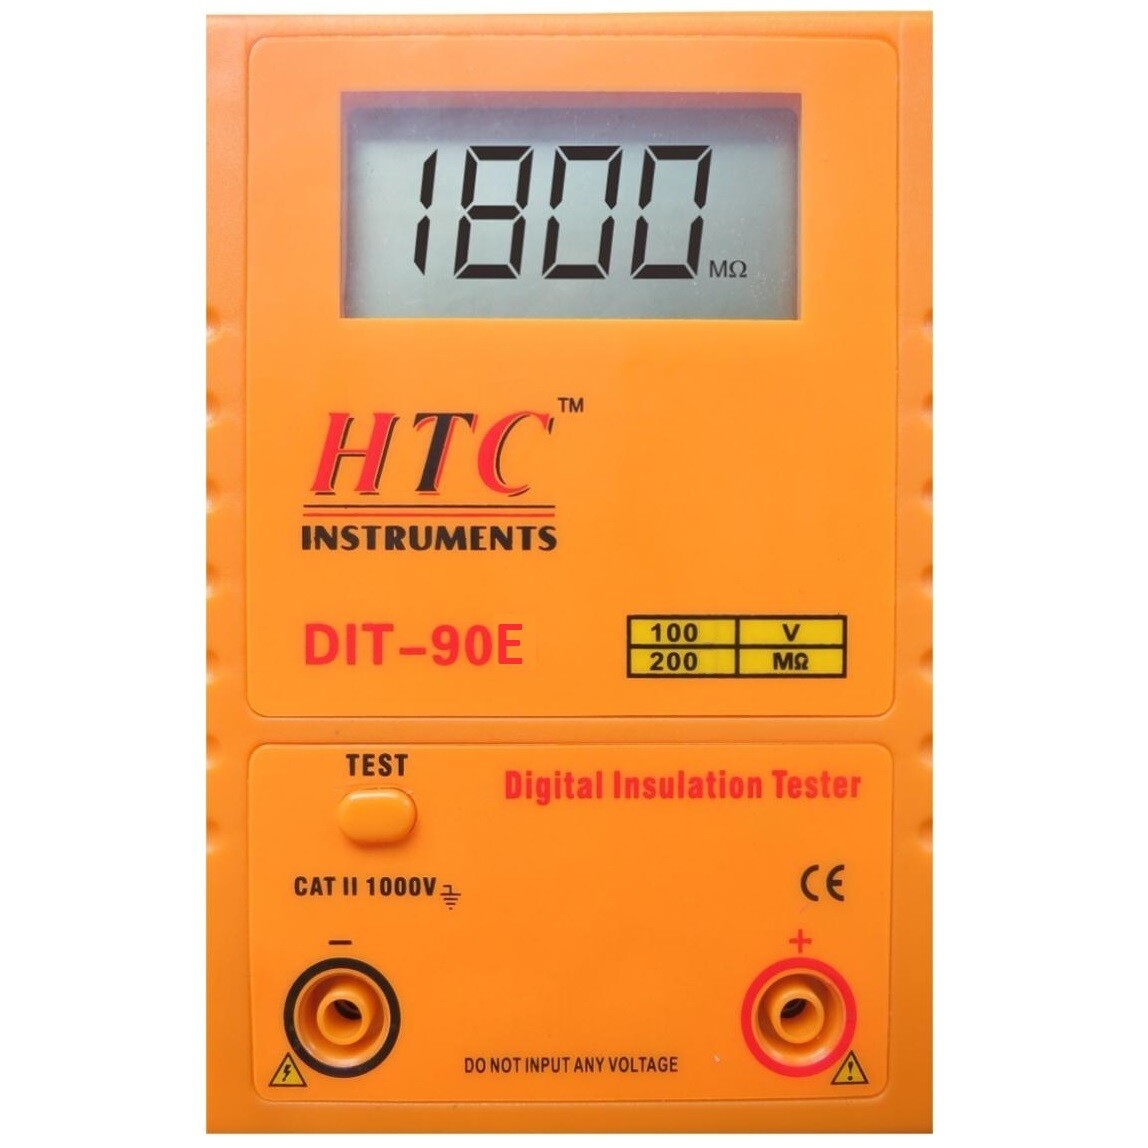 HTC DIT-90E Digital Insulation Tester 100V - 200MOhms